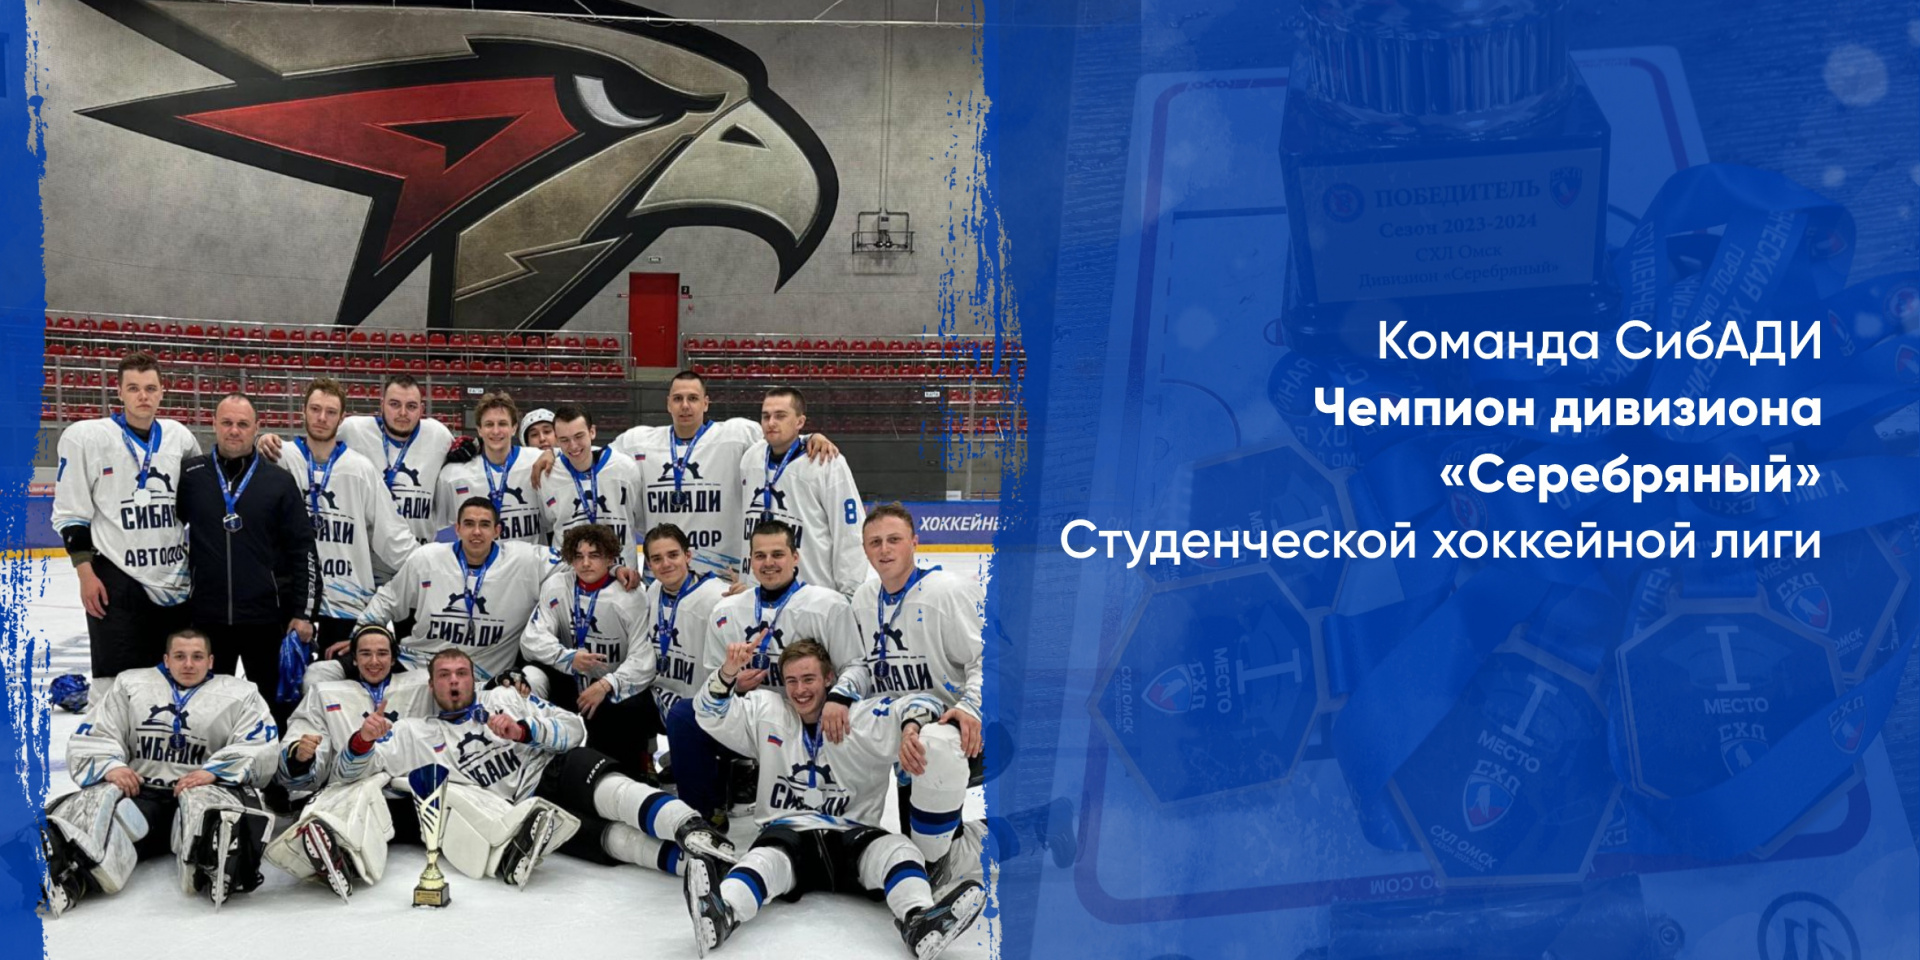 Команда СибАДИ – Чемпион дивизиона «Серебряный» Студенческой хоккейной лиги 